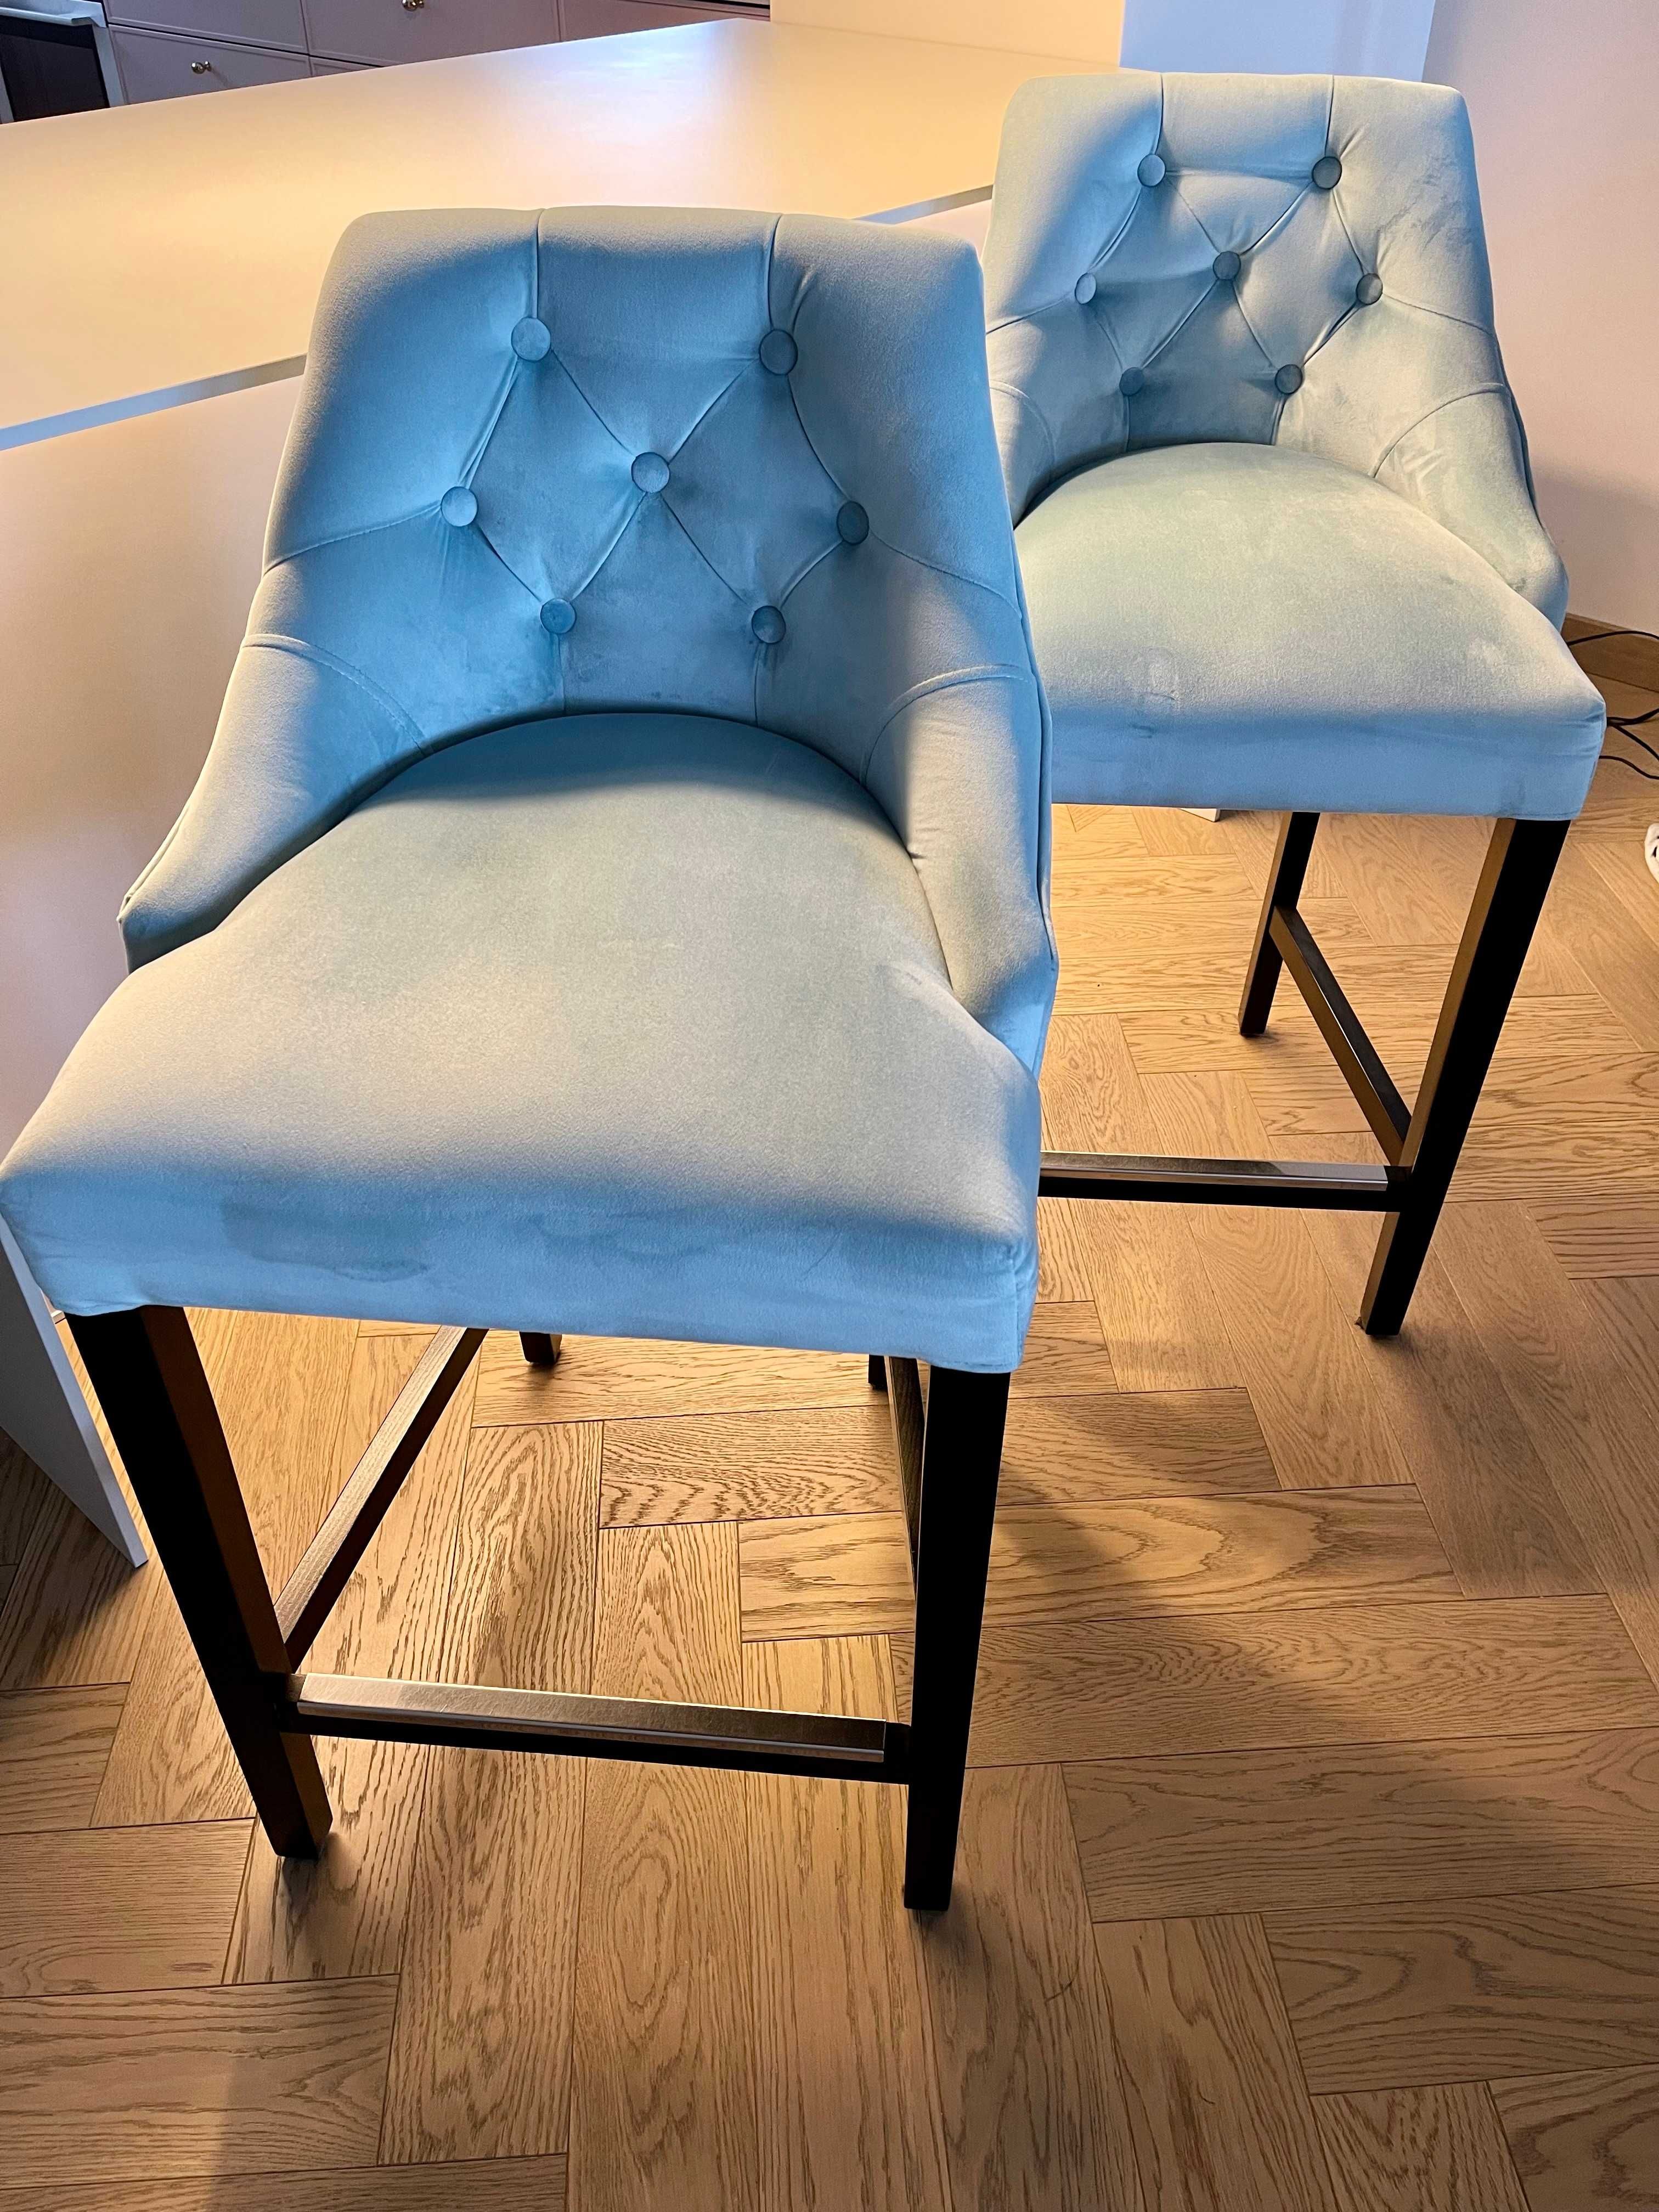 Krzesło barowe hoker niebieskie, pikowane,  dostępne 2 szt.